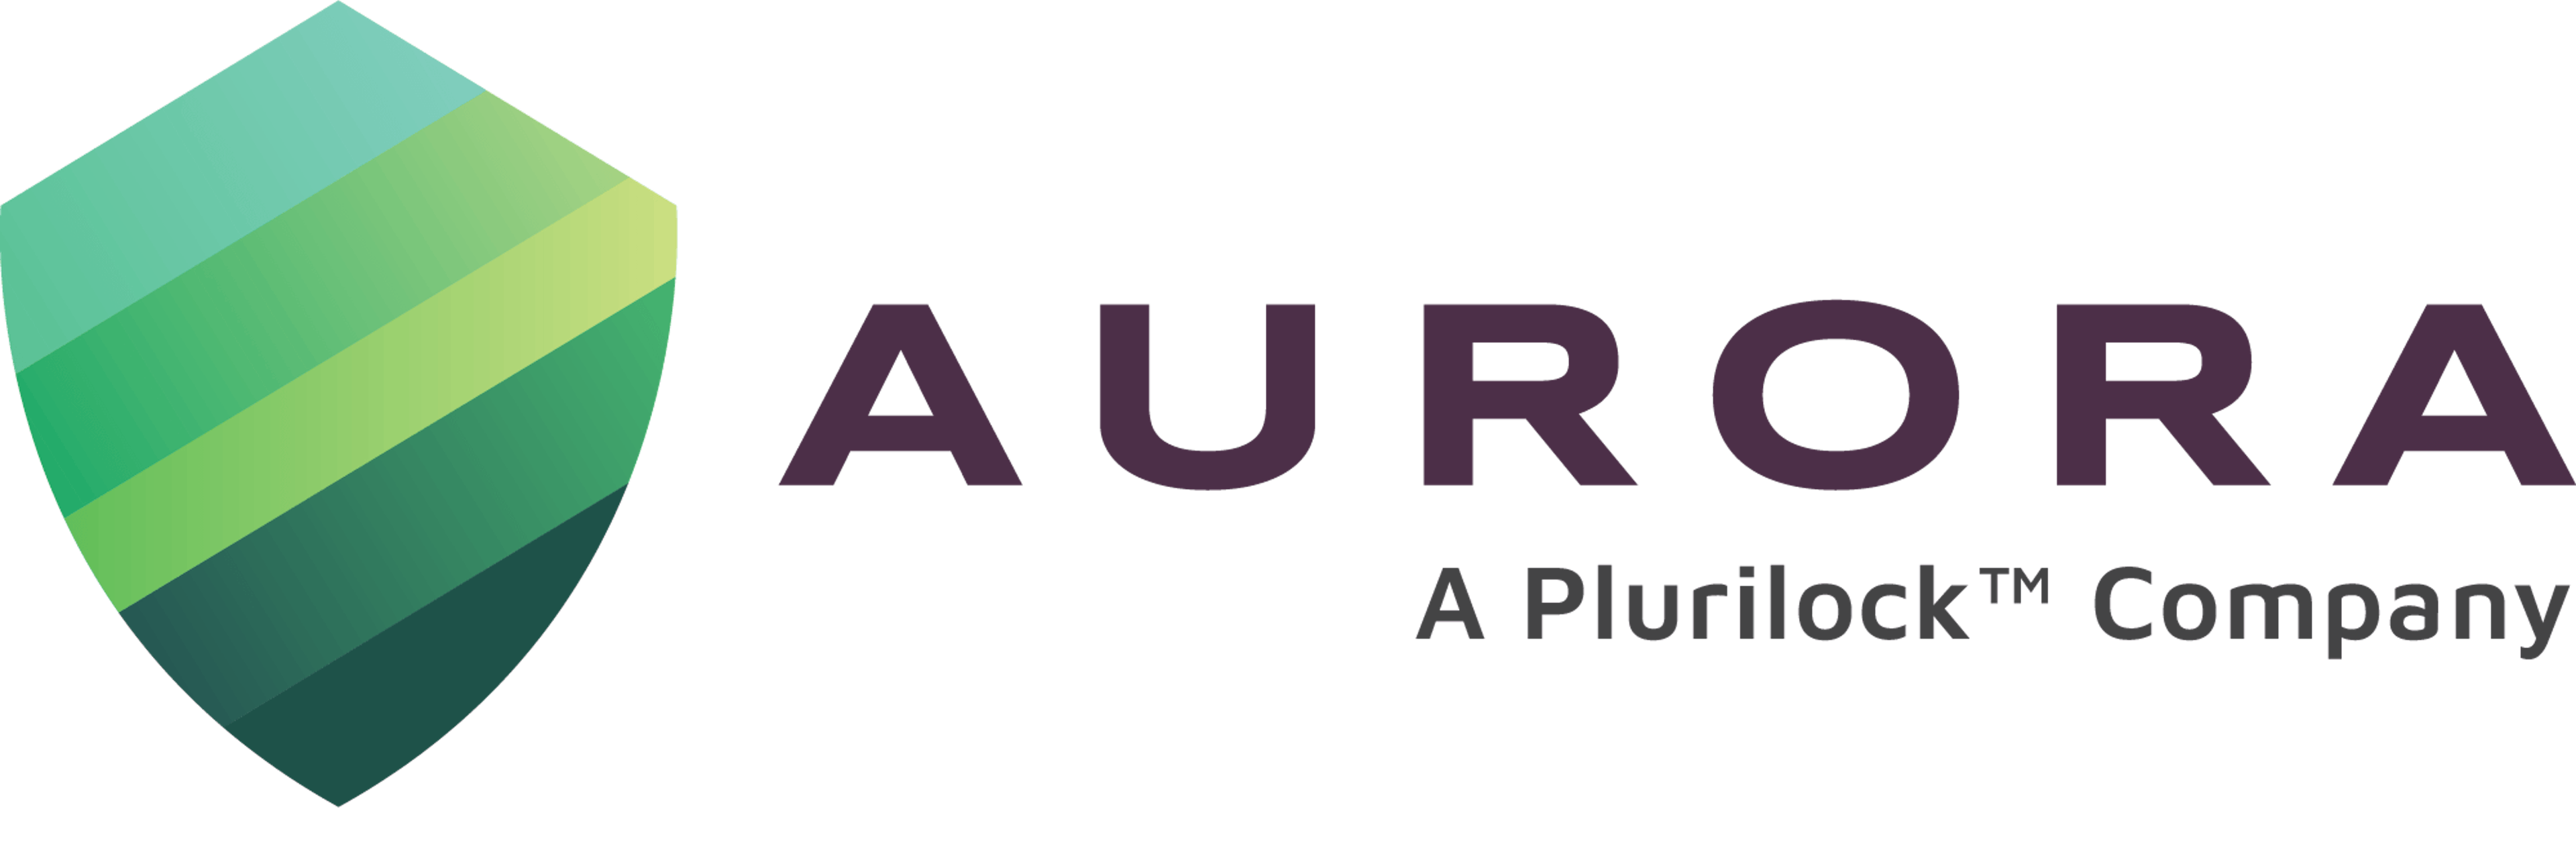 Aurorait.com